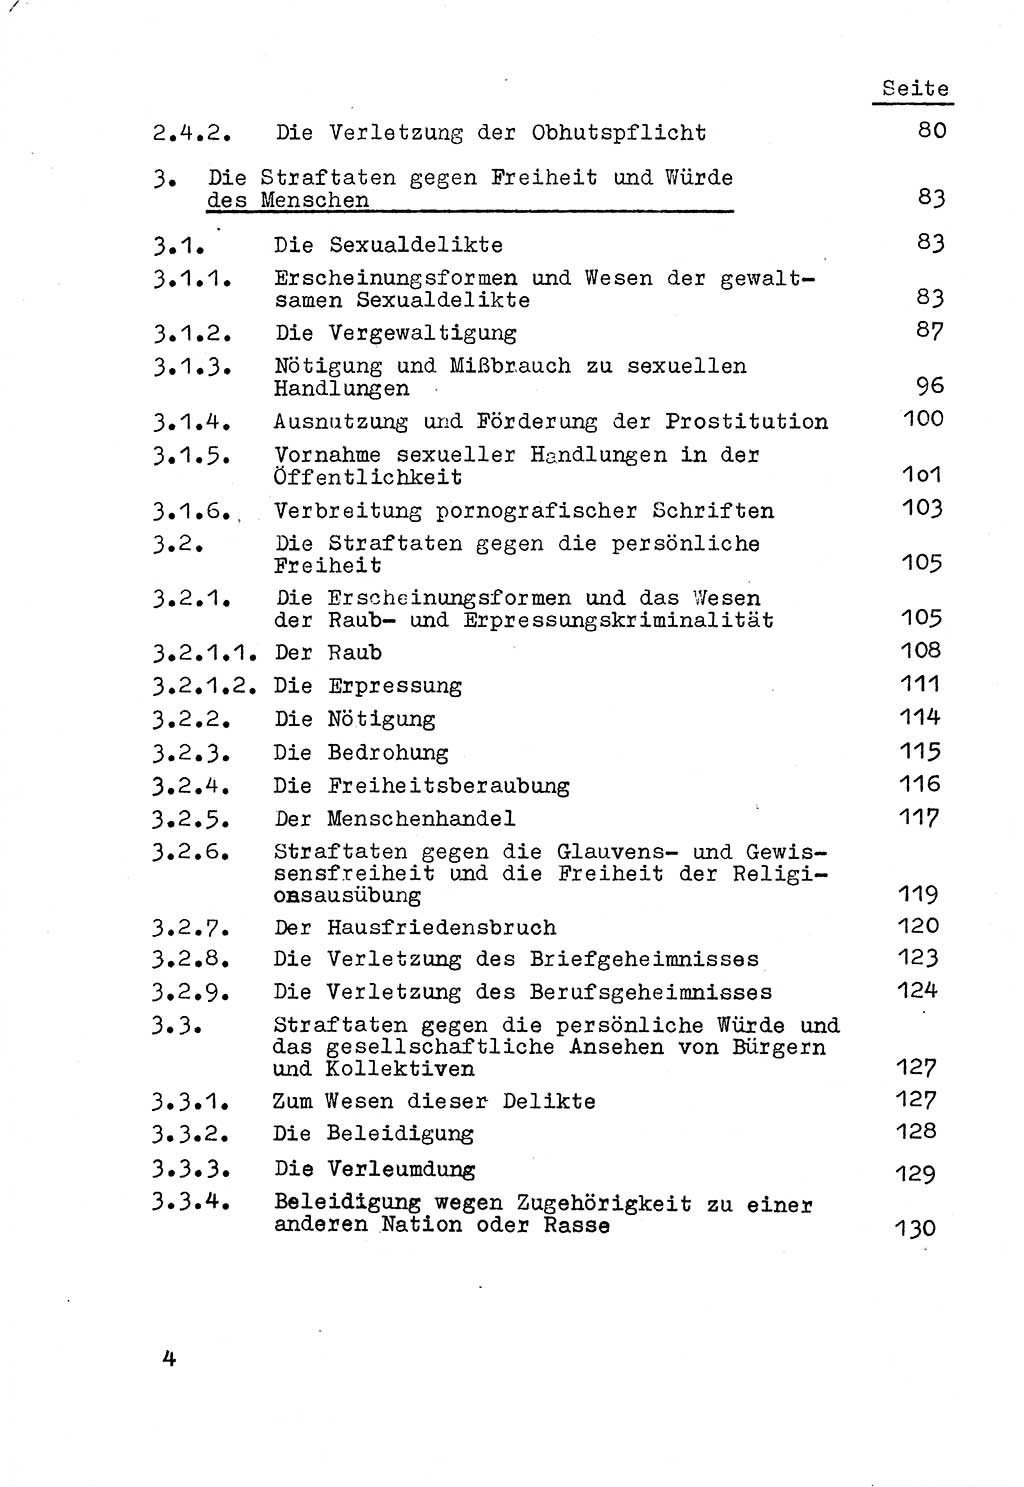 Strafrecht der DDR (Deutsche Demokratische Republik), Besonderer Teil, Lehrmaterial, Heft 3 1969, Seite 4 (Strafr. DDR BT Lehrmat. H. 3 1969, S. 4)